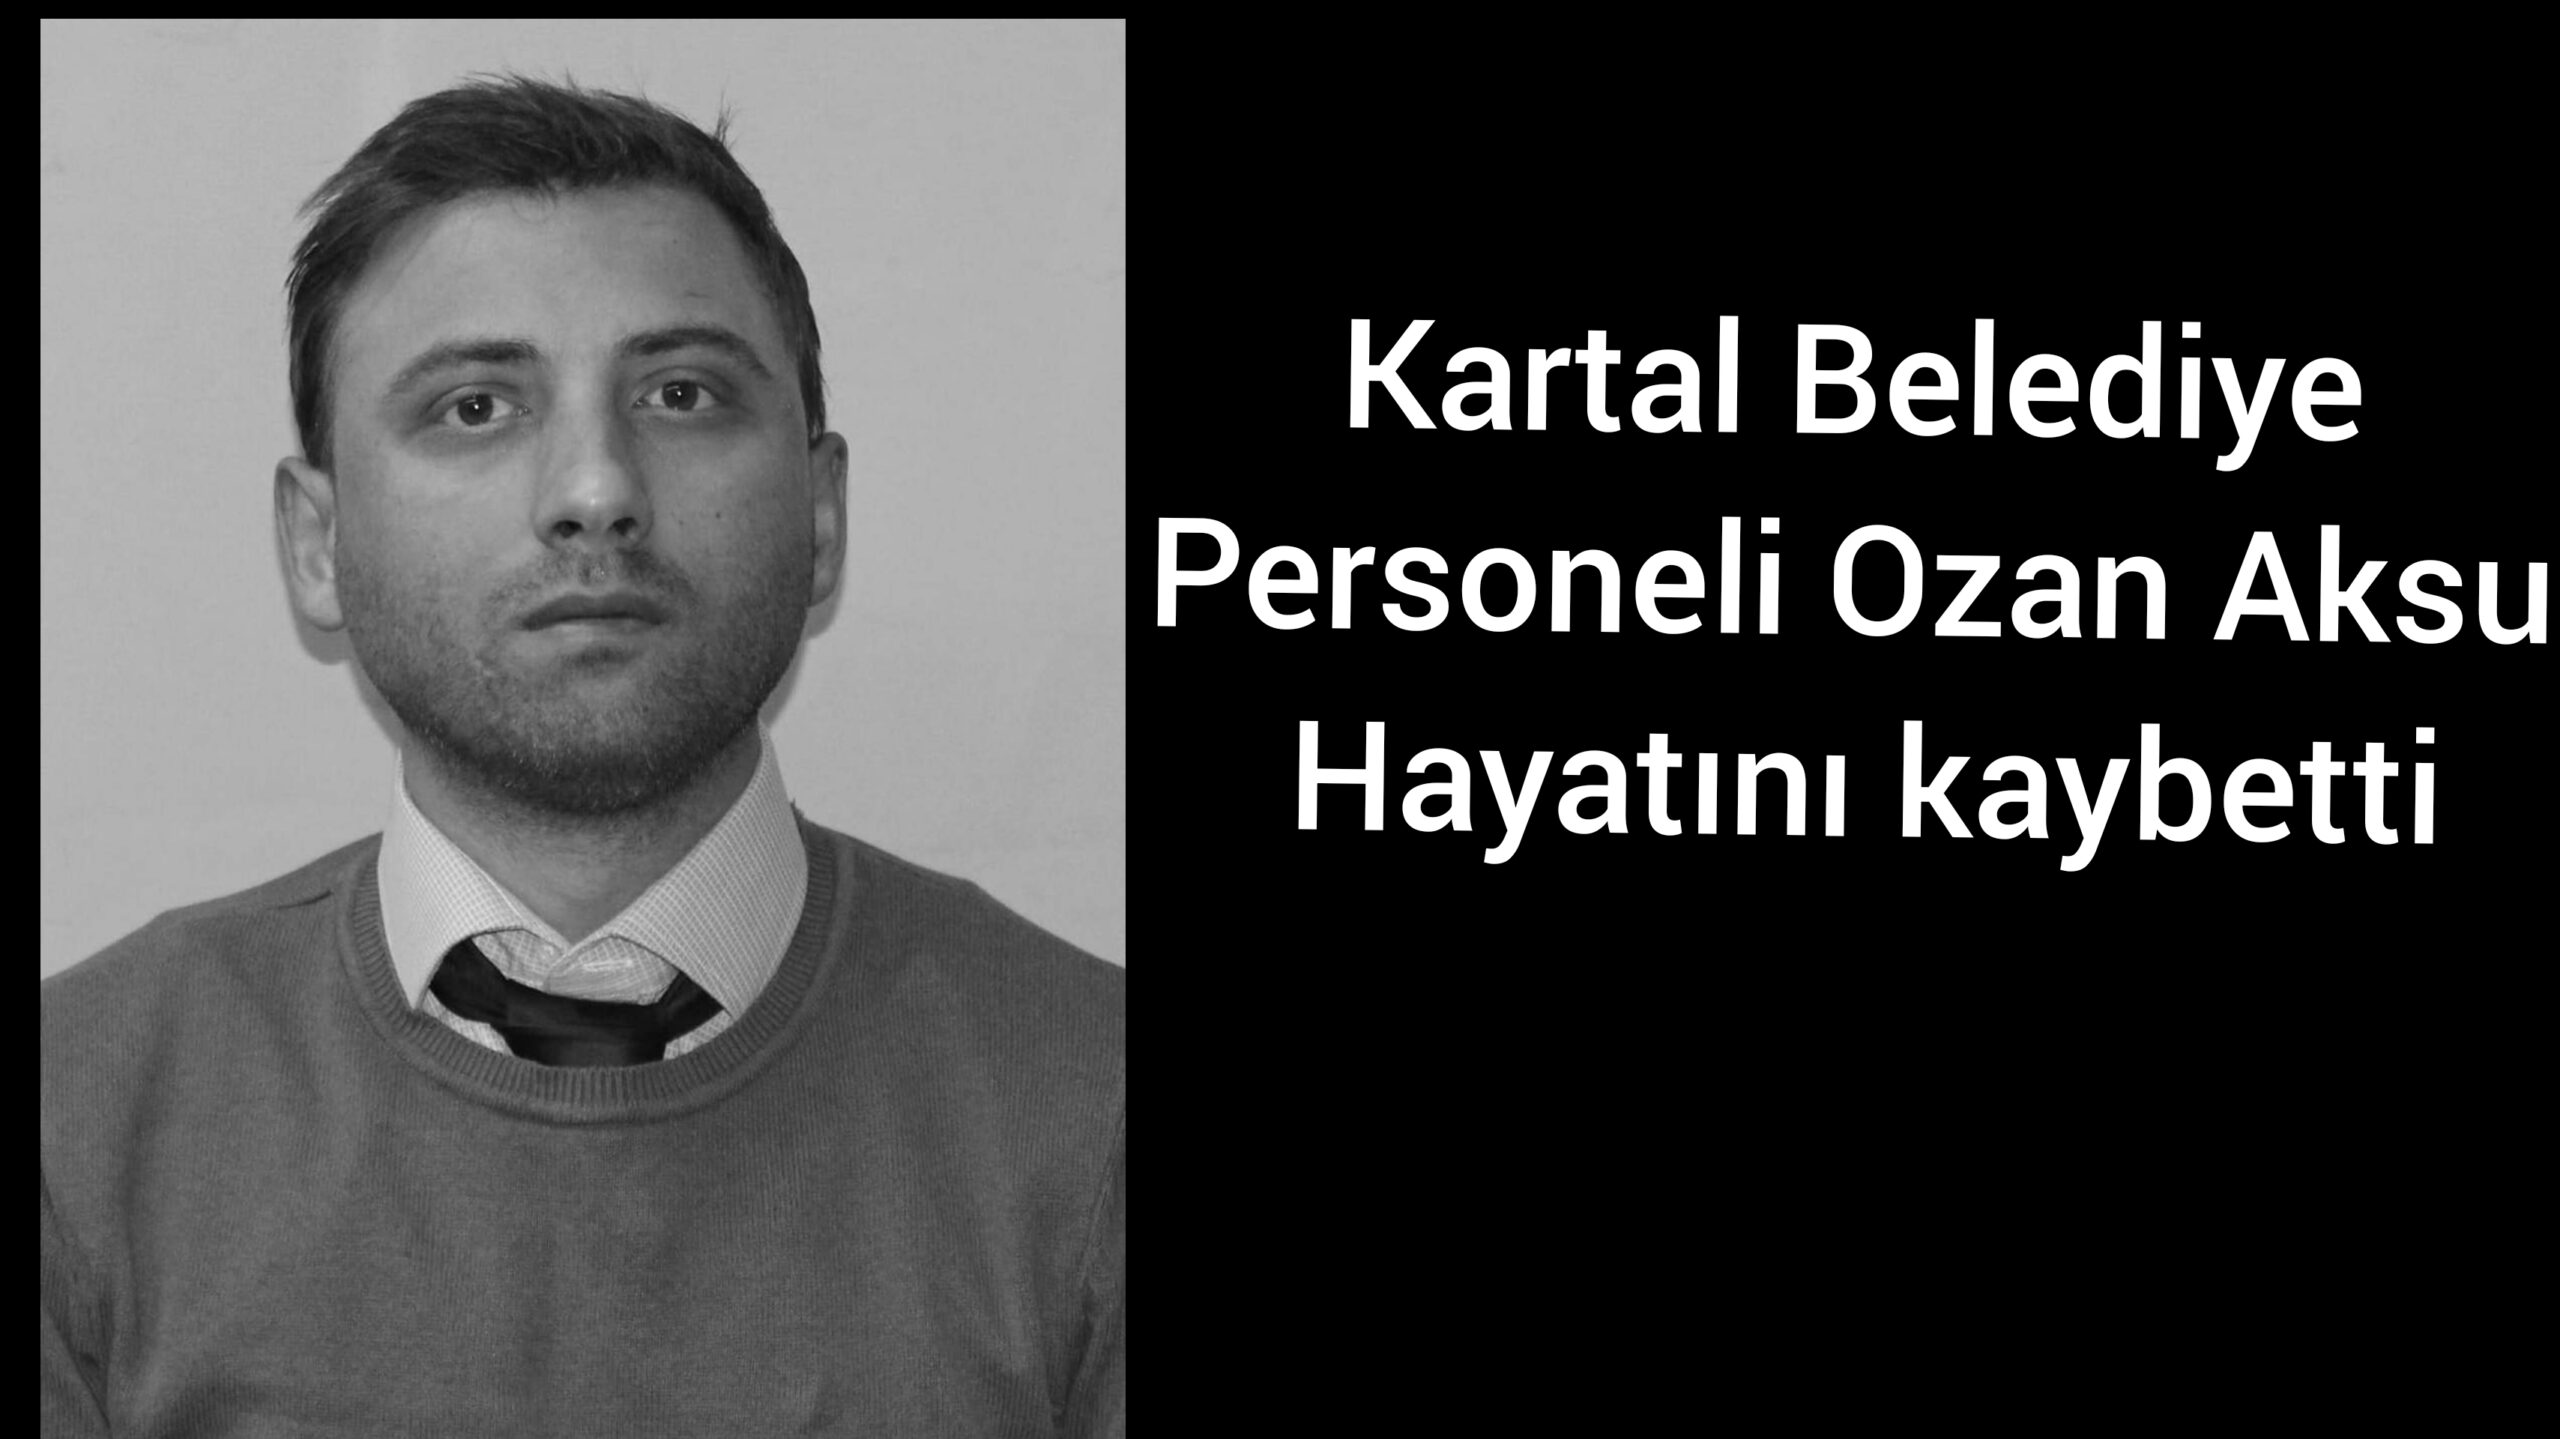 “Kartal Belediye Personeli Ozan Aksu,Hayatını kaybetti “